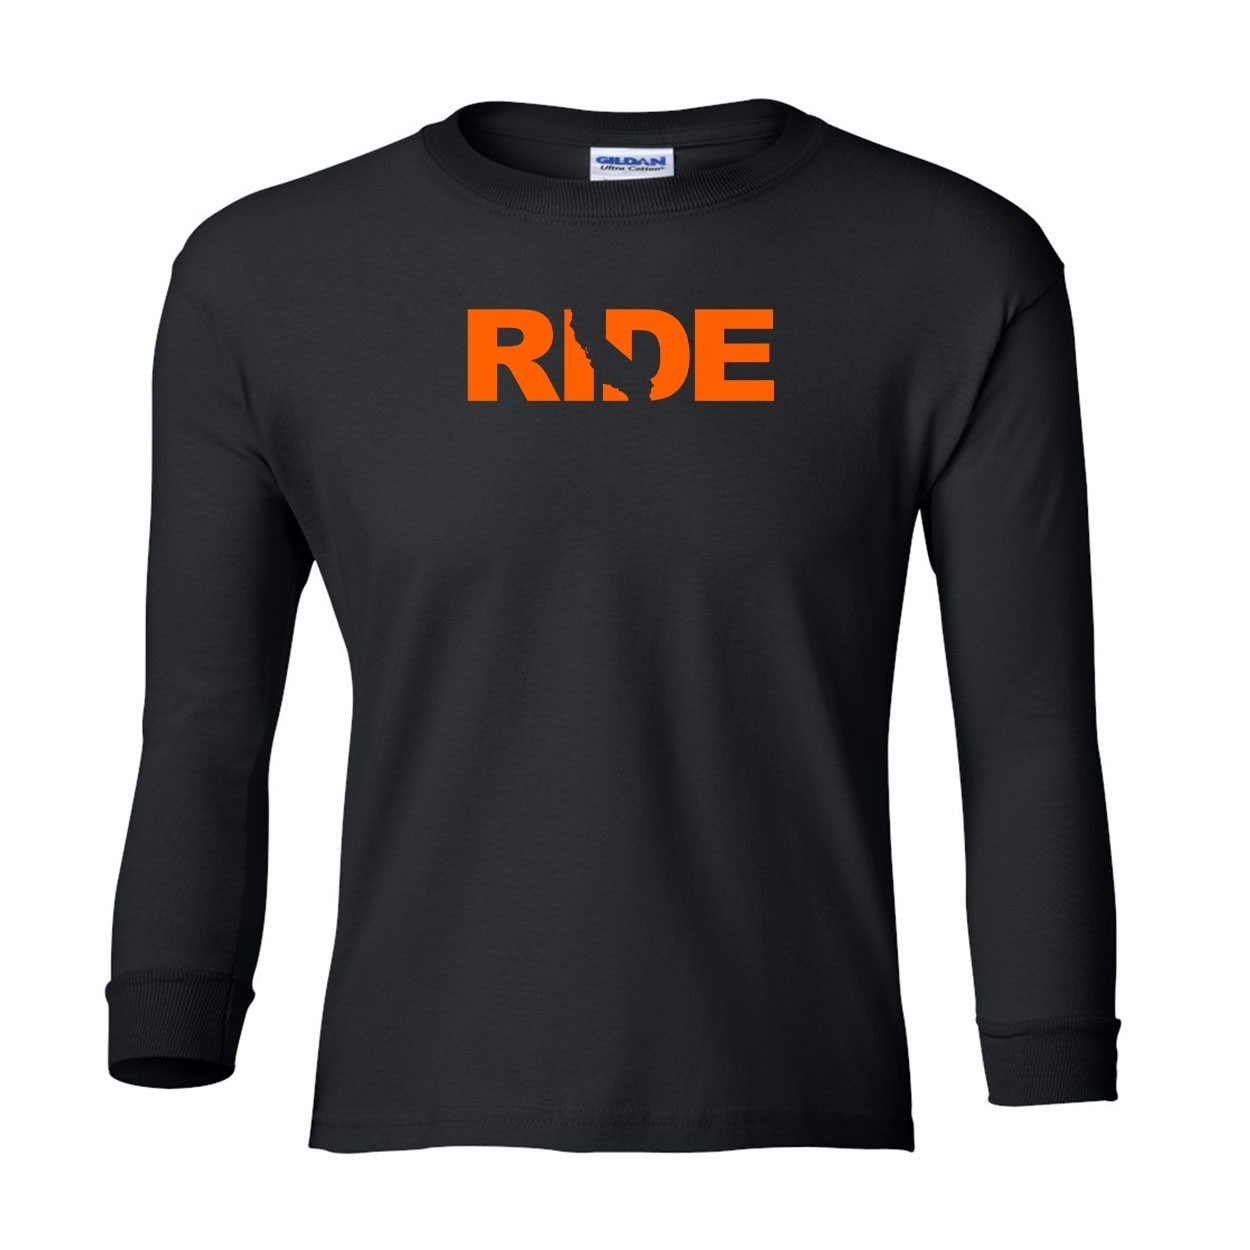 Ride California Classic Youth Unisex Long Sleeve T-Shirt Black (Orange Logo)